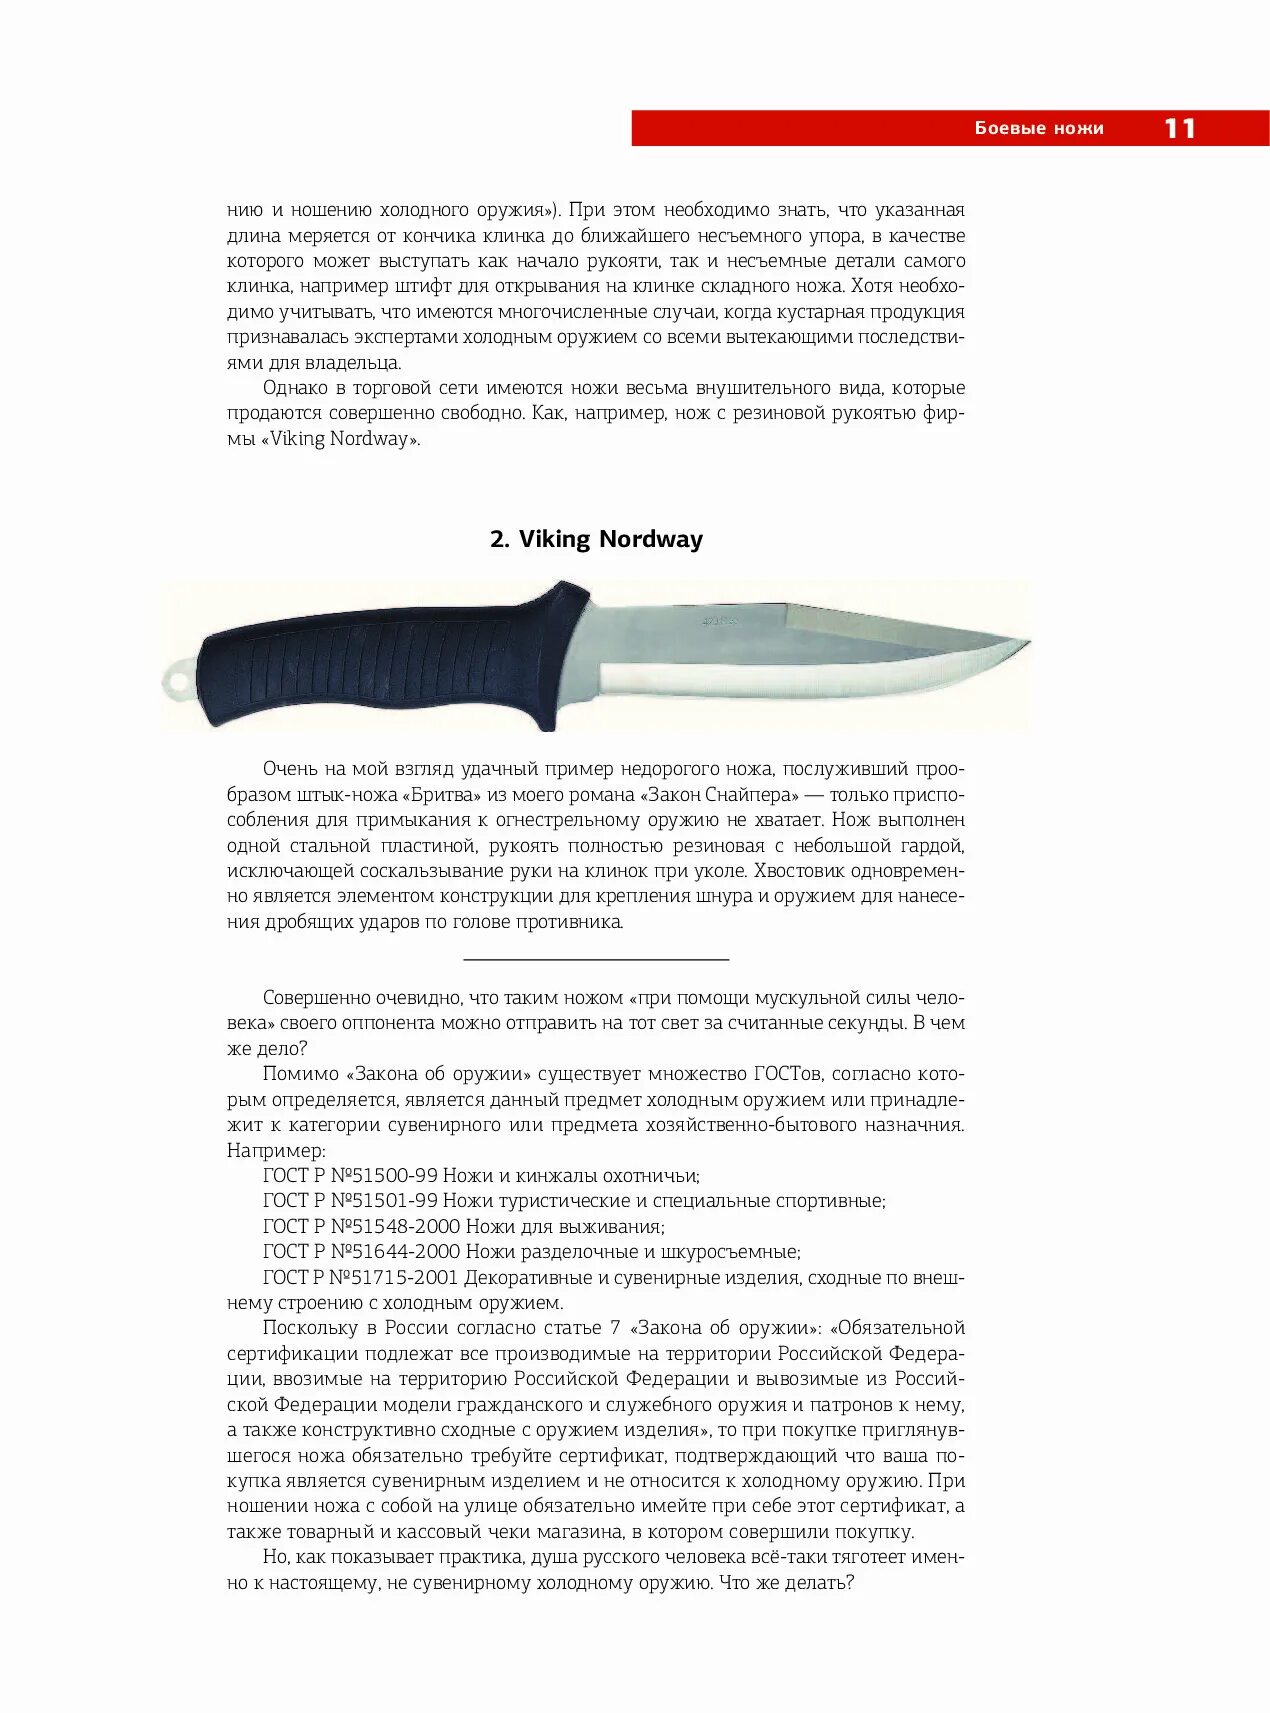 Ножи охотничьи ГОСТ. Ношение холодного оружия статья